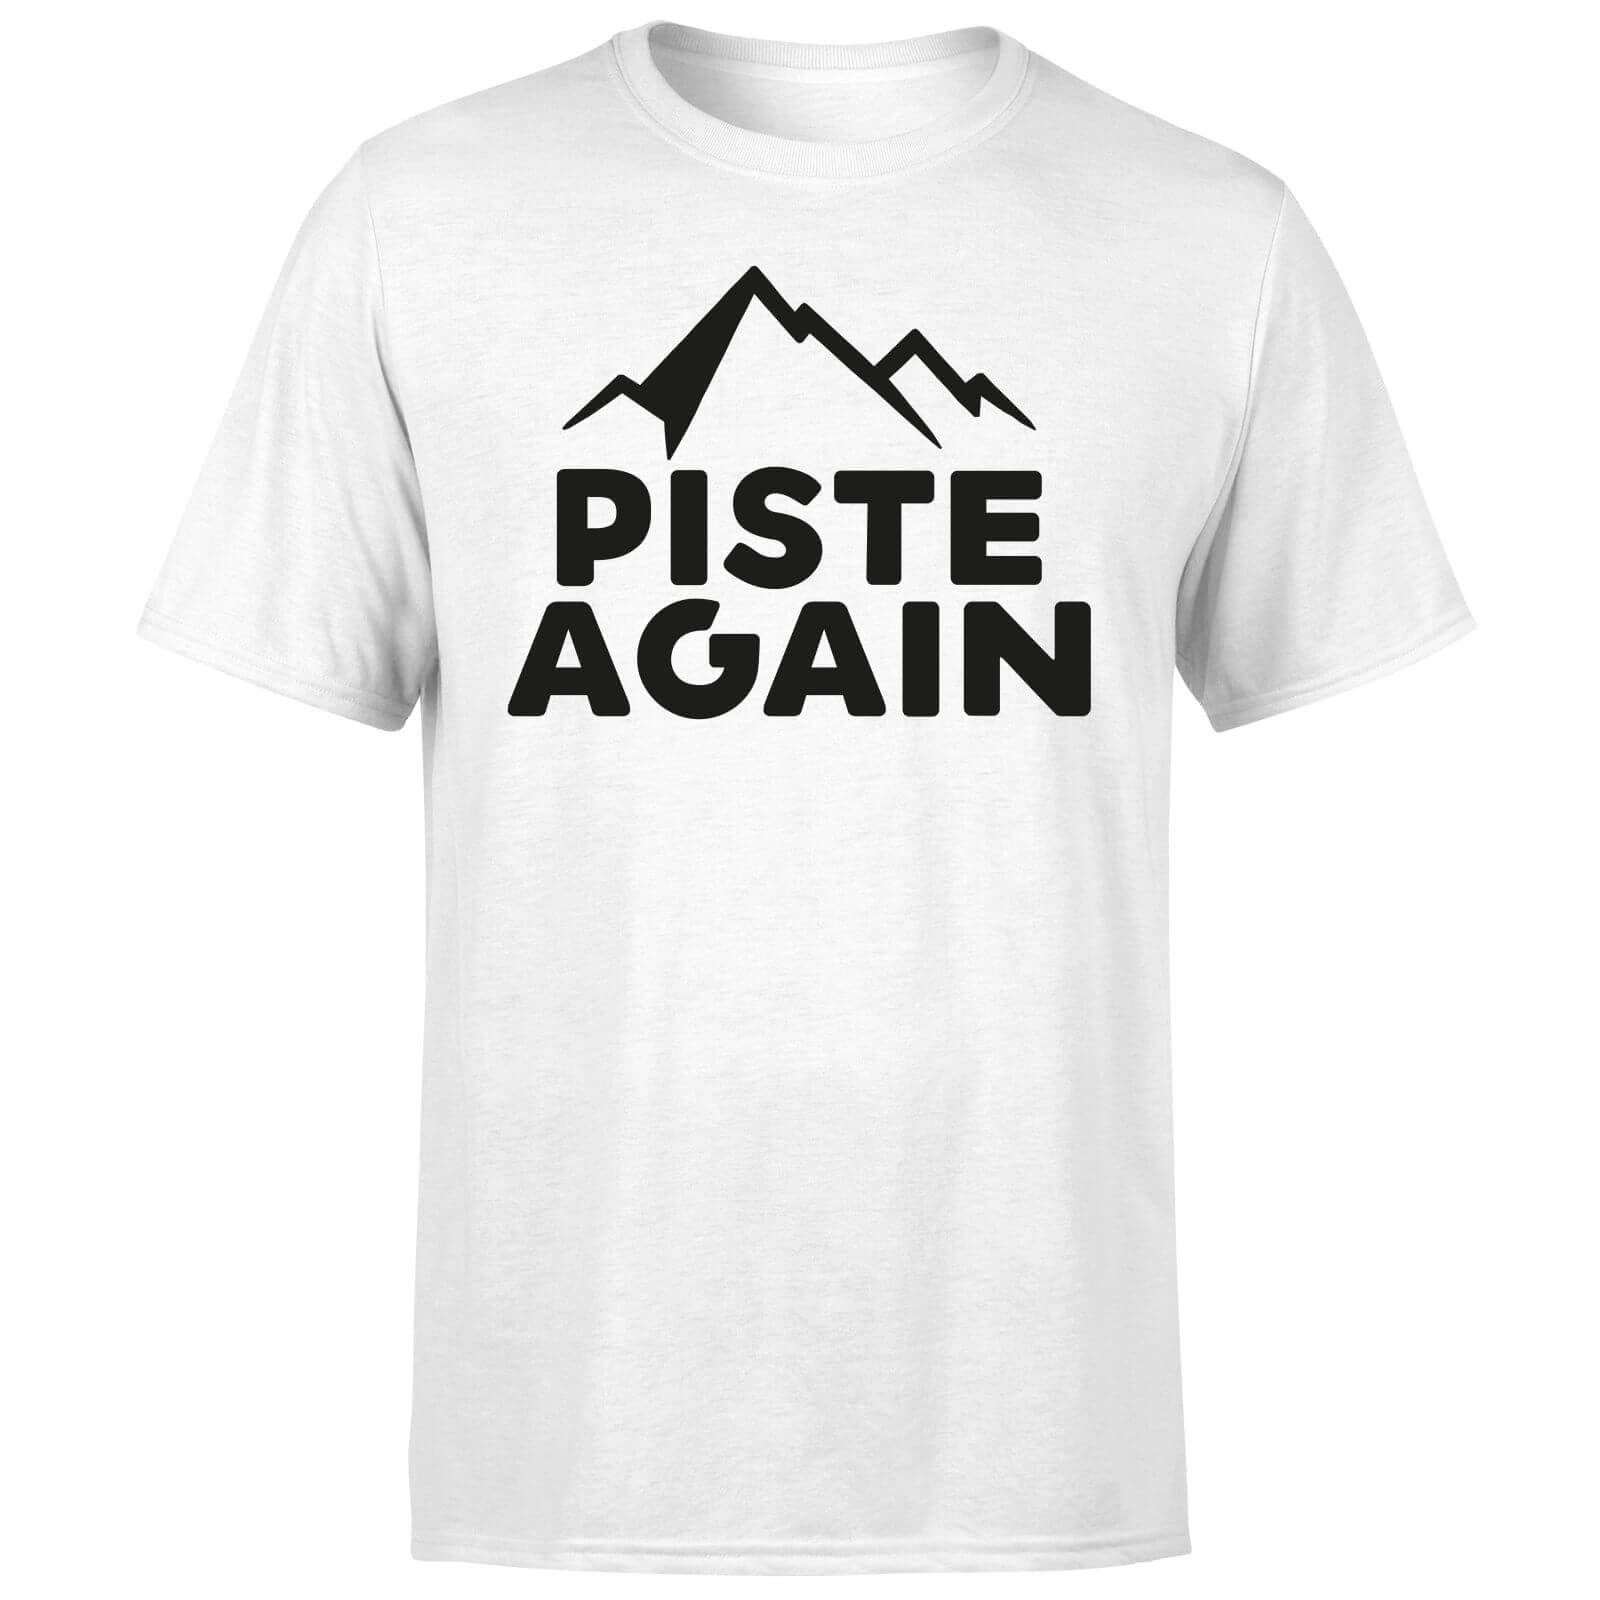 Piste Again T-Shirt - White - S